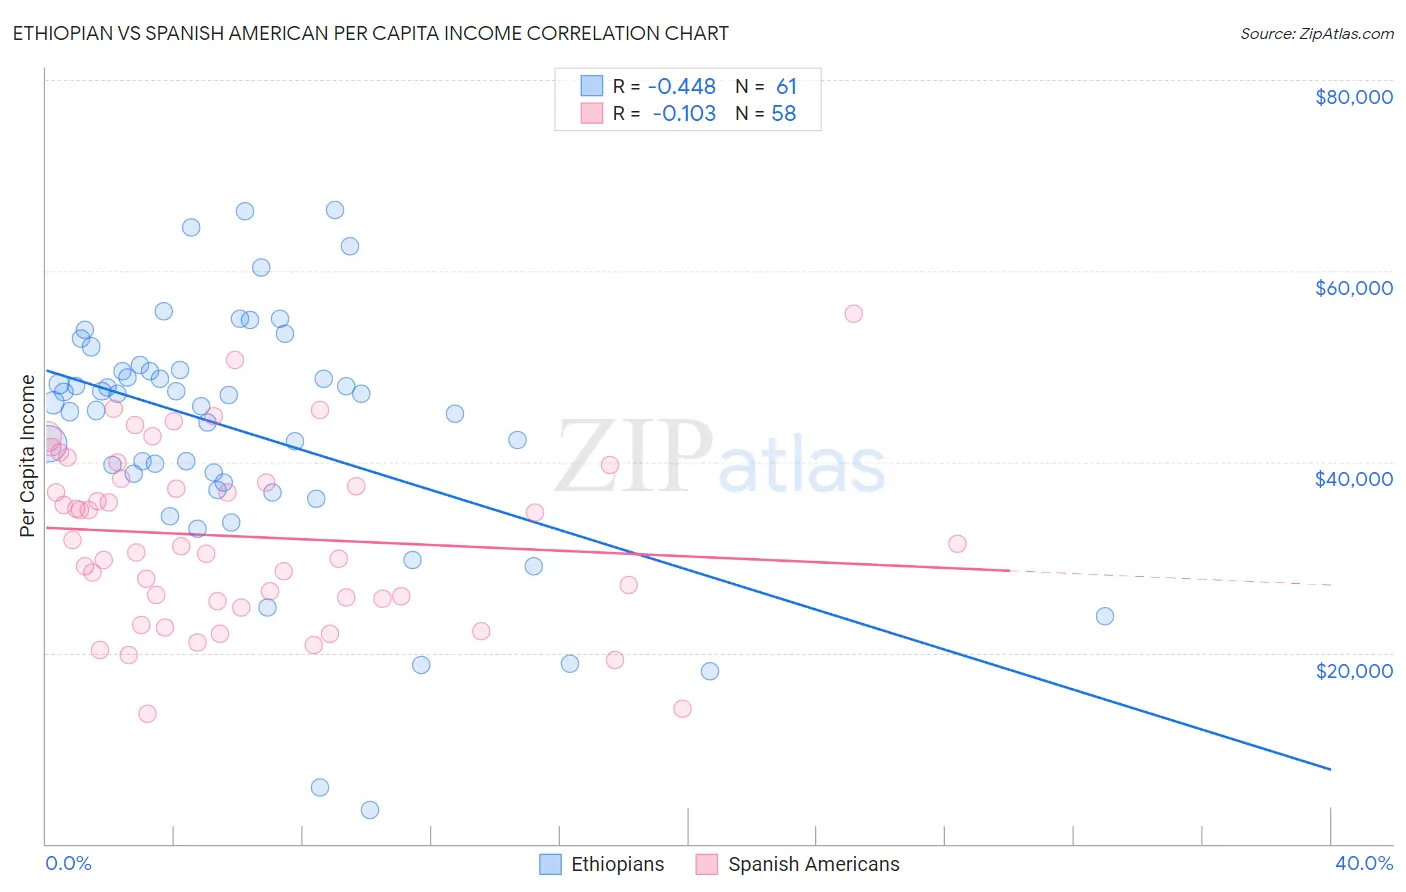 Ethiopian vs Spanish American Per Capita Income